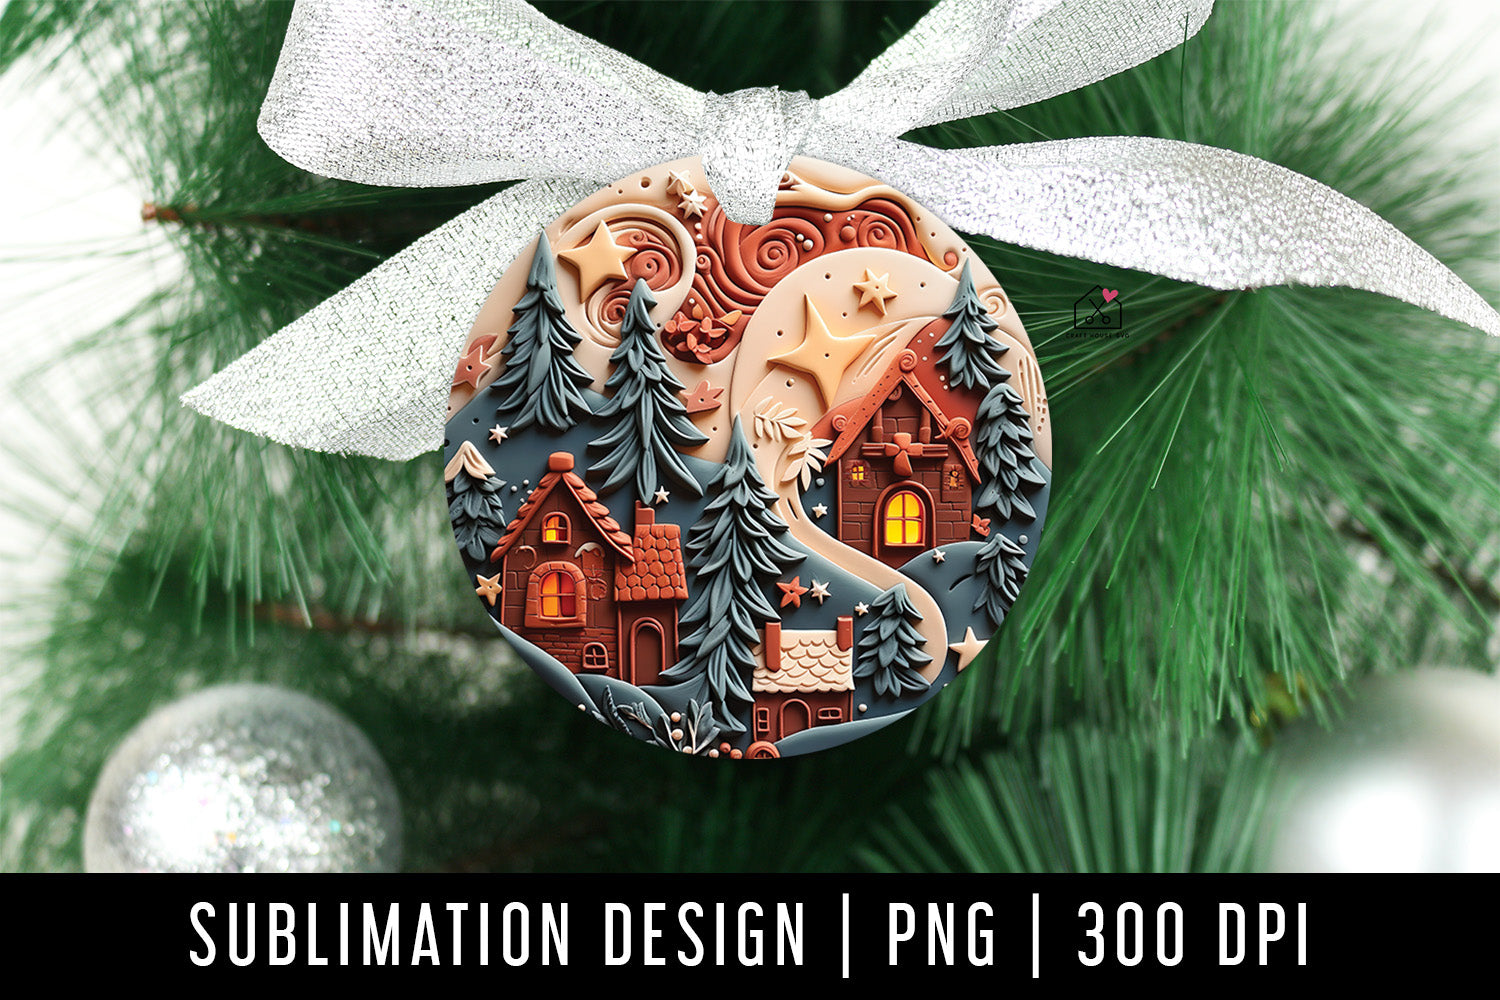 Christmas 3D Ornament Sublimation Design PNG